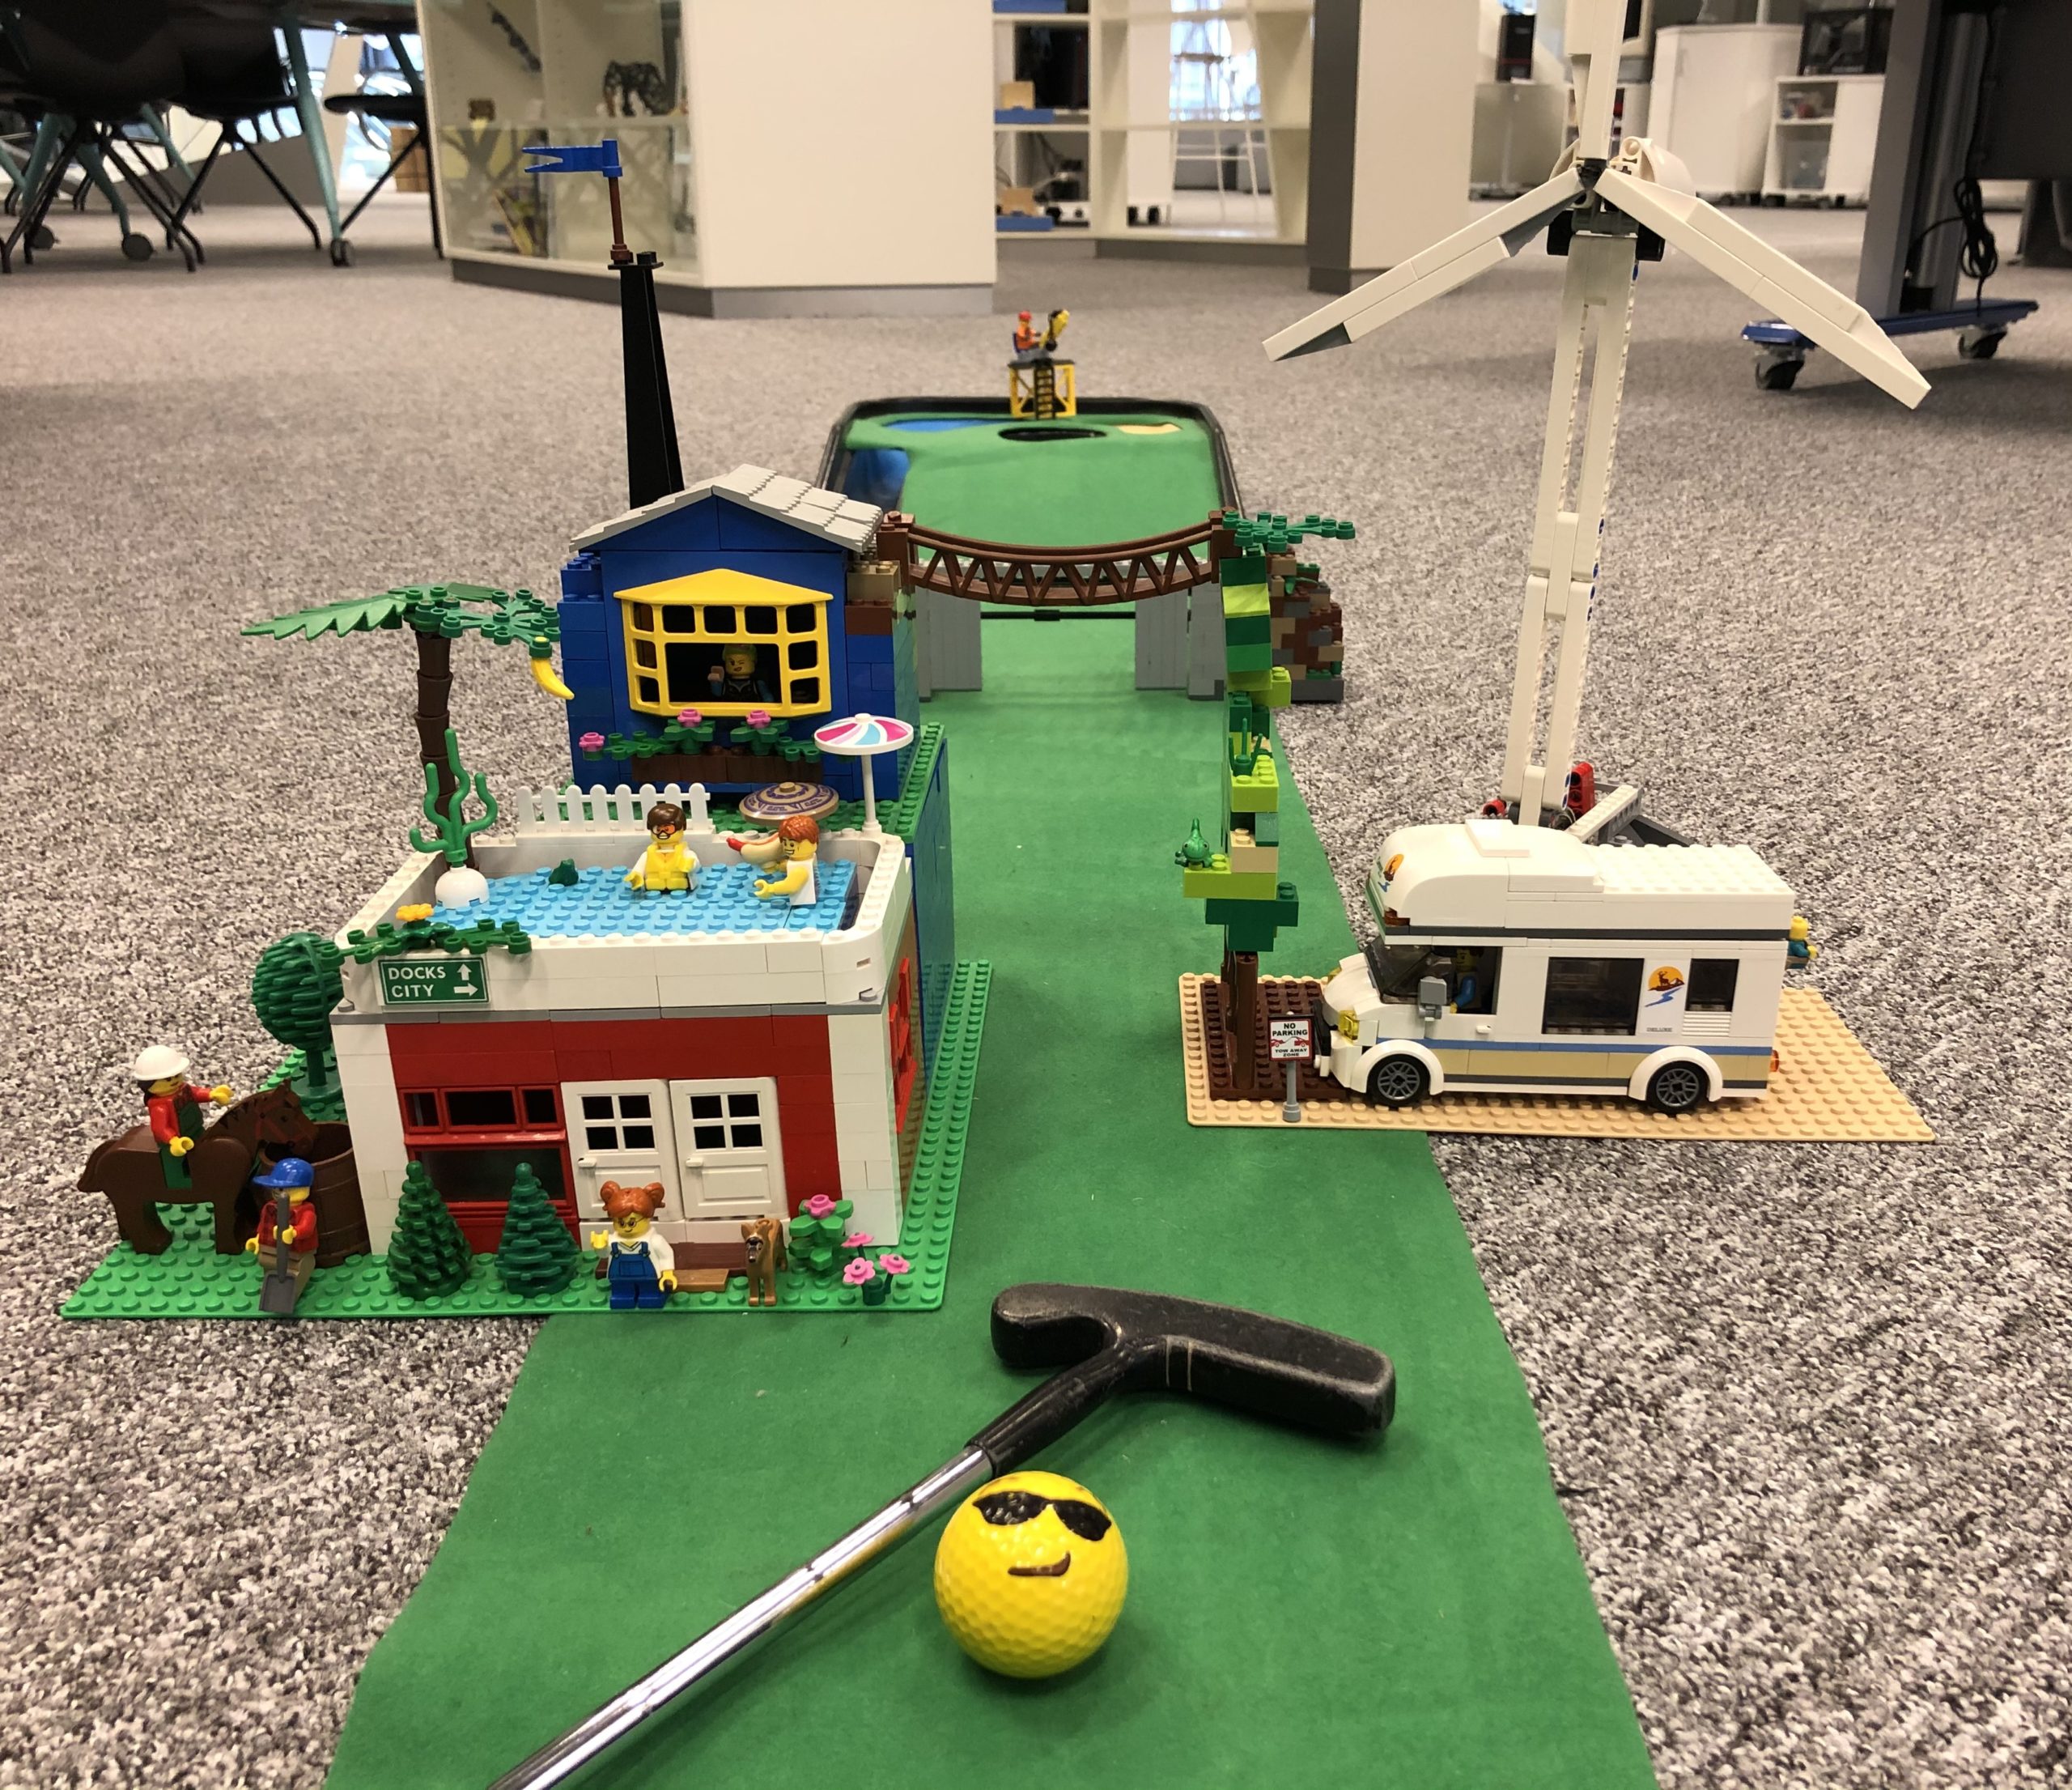 Minigolfbana byggd i LEGO. Banan innehåller två hus, en husbil, ett vindkraftverkt och en hängbro.